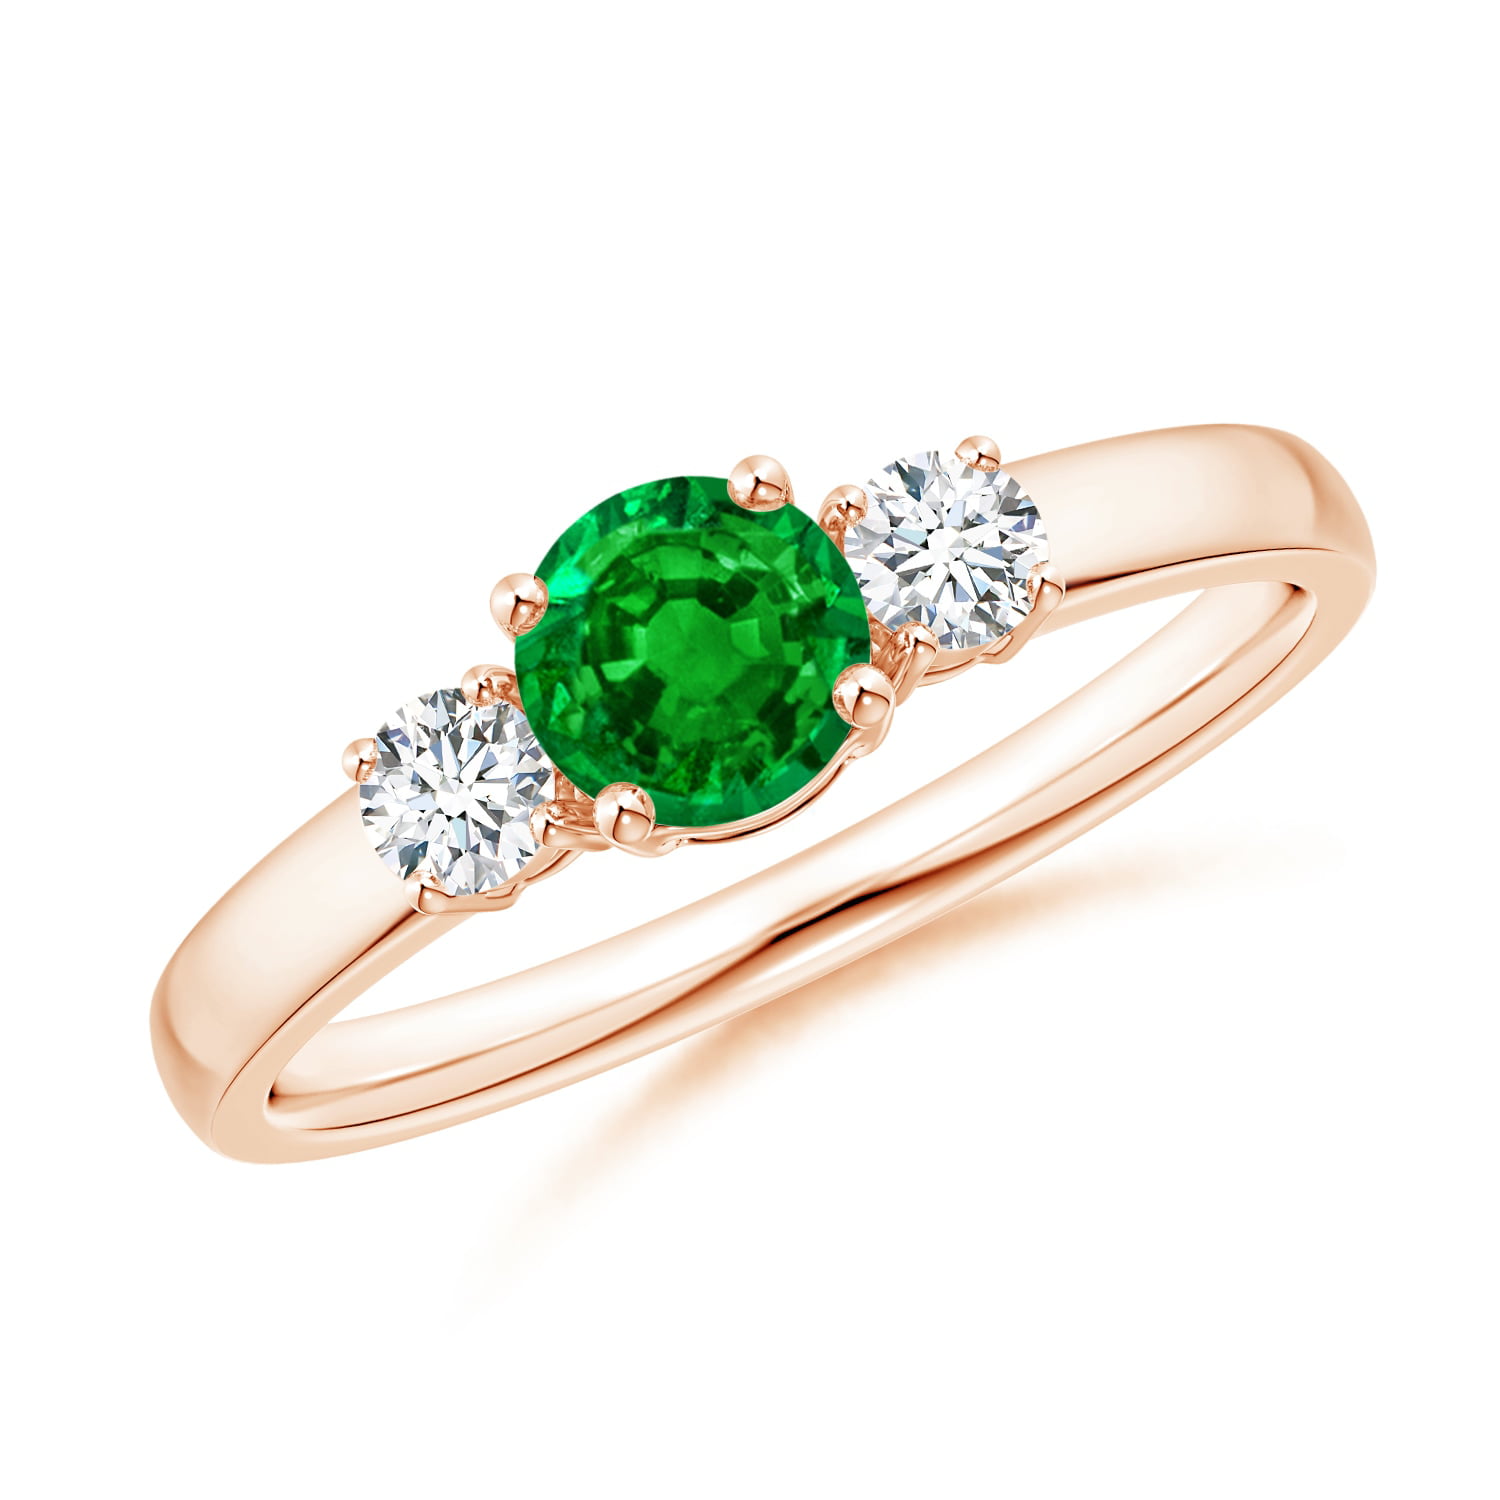 Angara - May Birthstone Ring - Classic Emerald and Diamond Three Stone ...